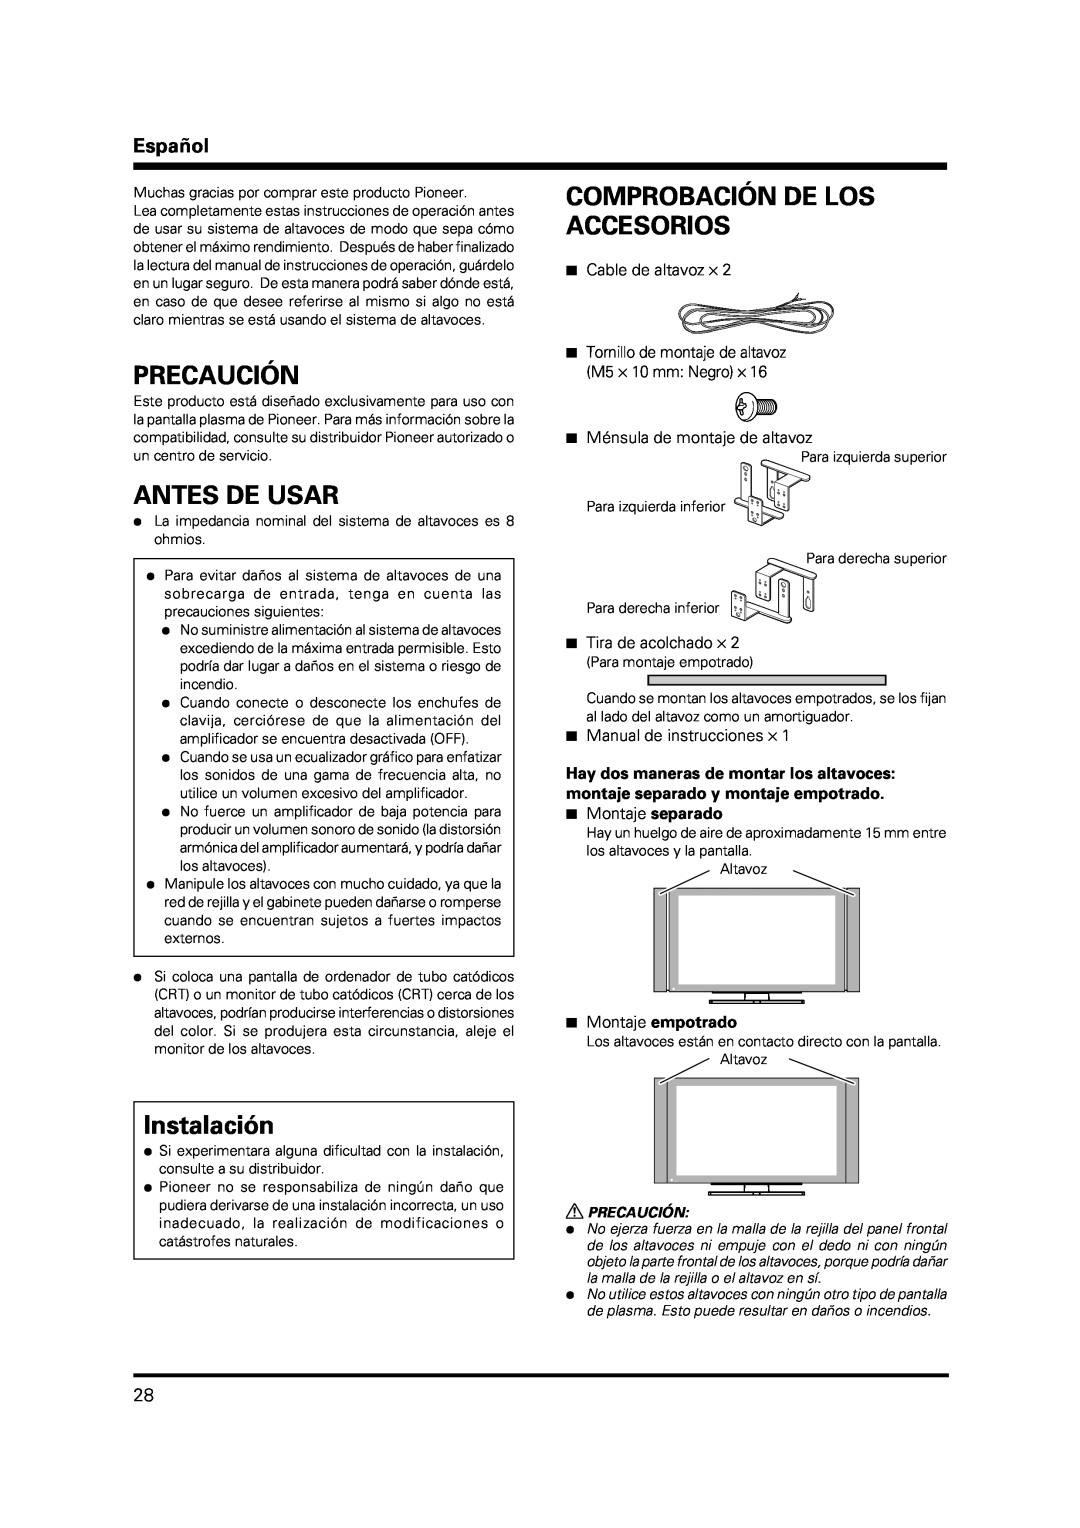 Pioneer PDP-S38 manual Precaución, Antes De Usar, Comprobación De Los Accesorios, Instalación, Español, 7Cable de altavoz ⋅ 